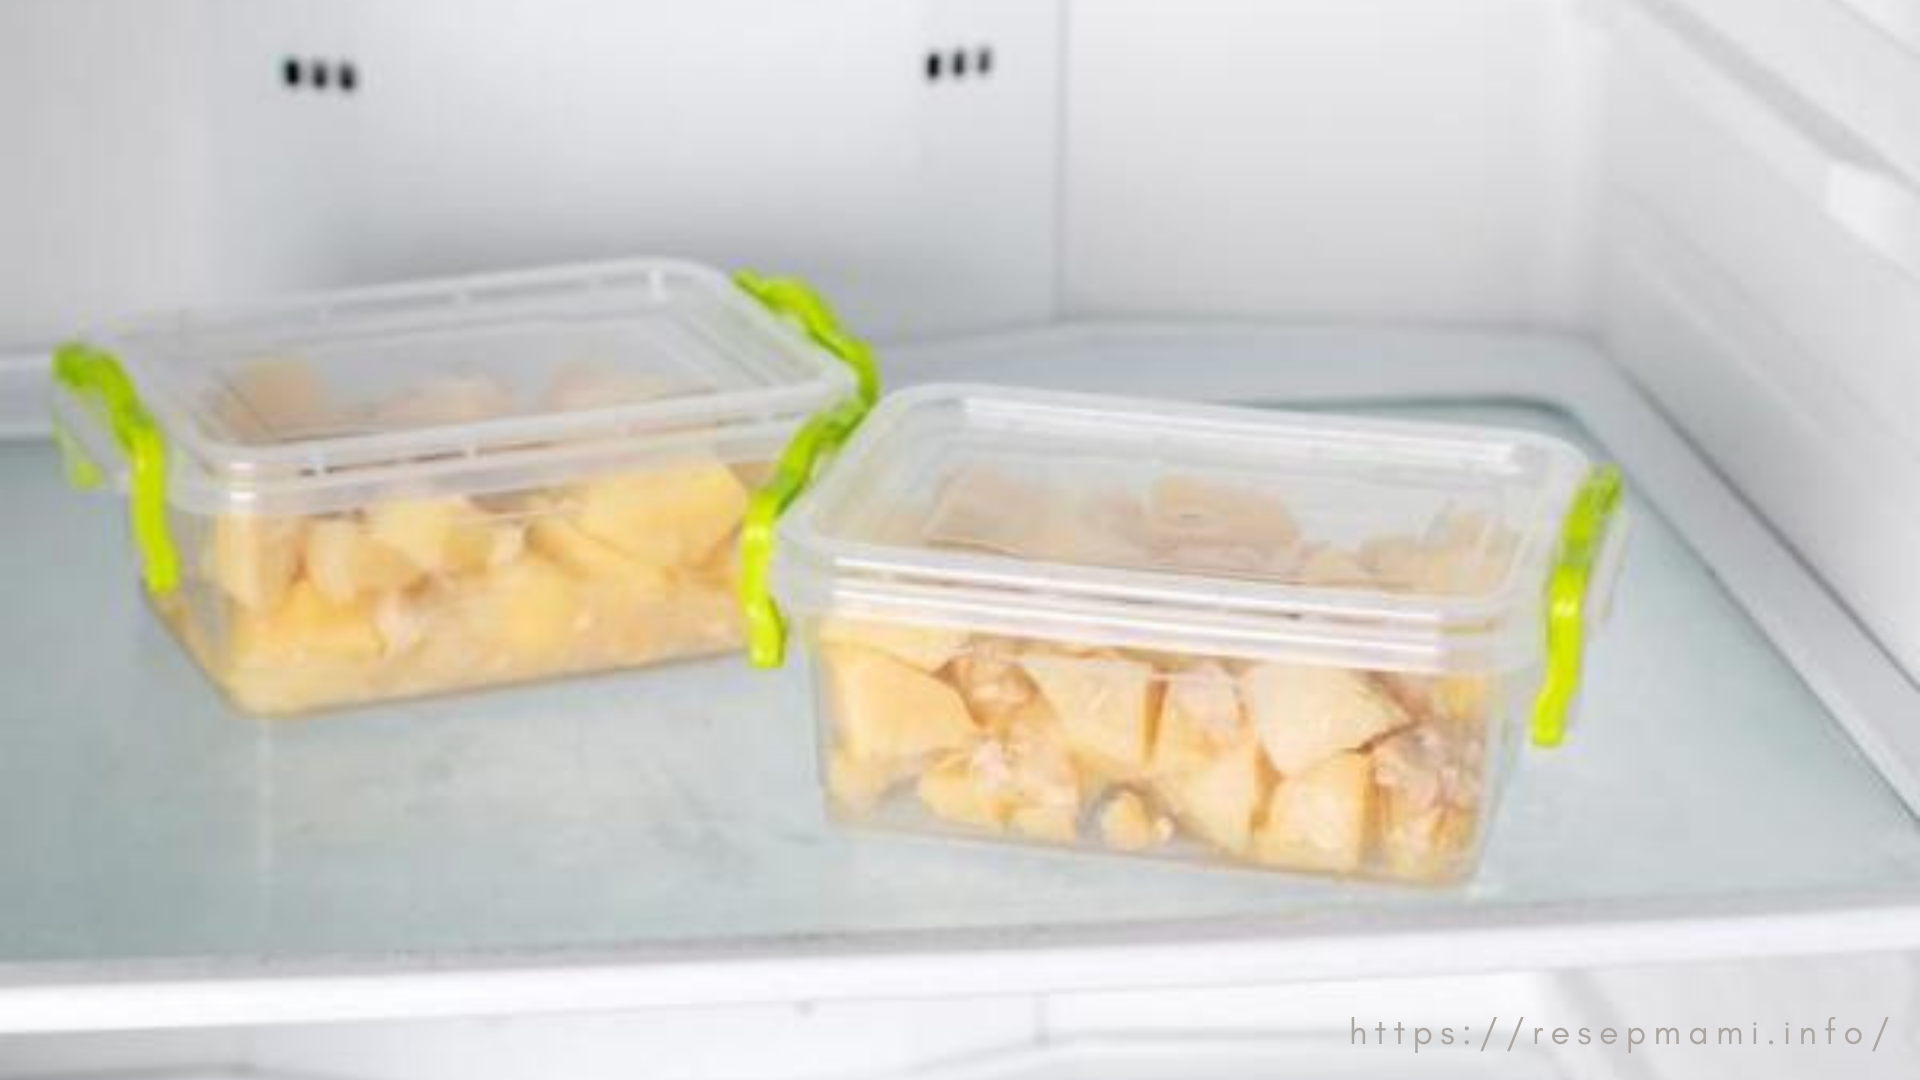 cara menyimpan kentang yang sudah dikupas di kulkas
